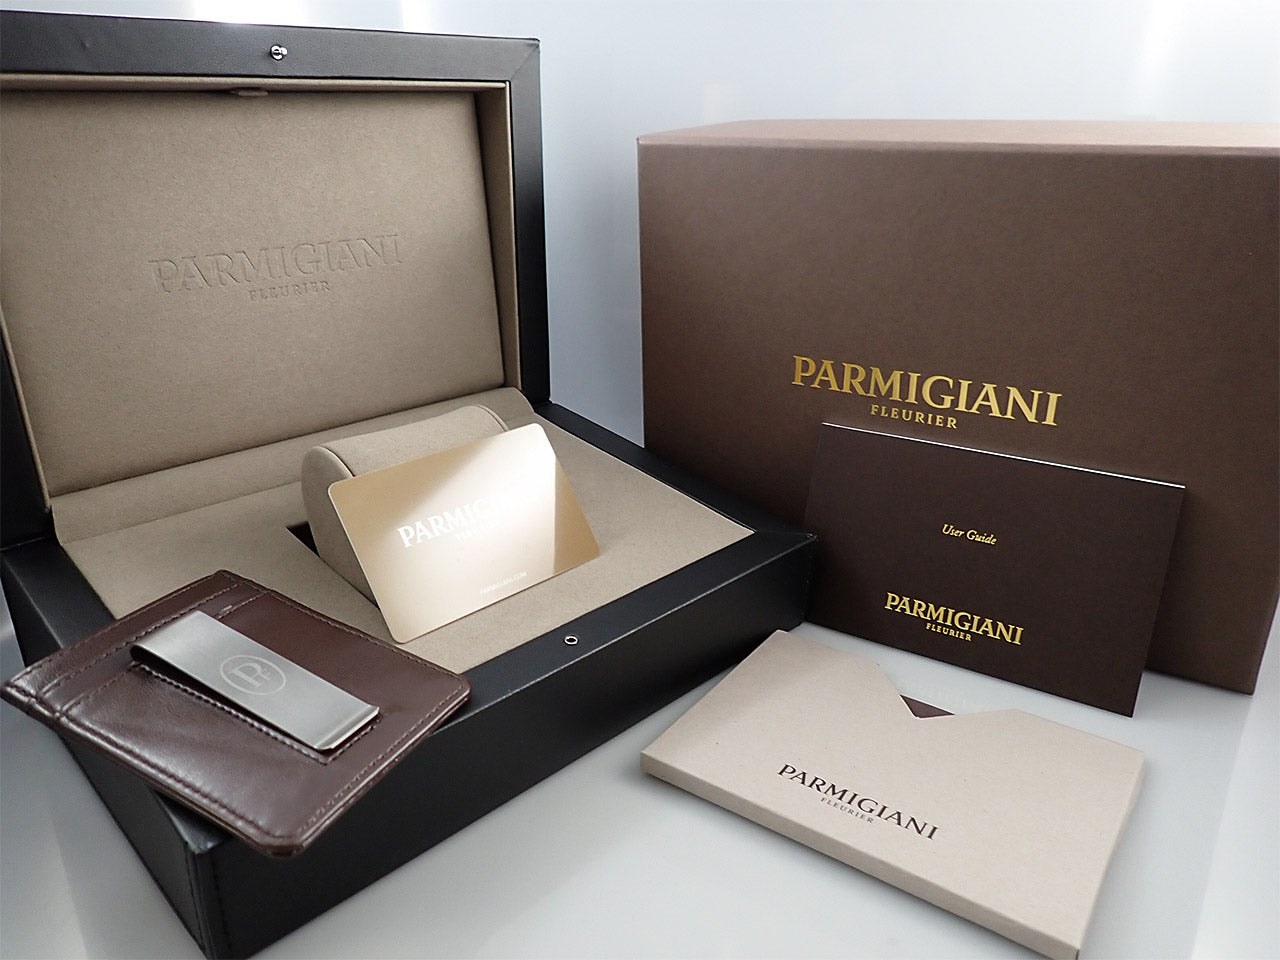 Parmigiani Fleurier Toric Hémisphères Retrograde &lt;Warranty, Box, etc.&gt;